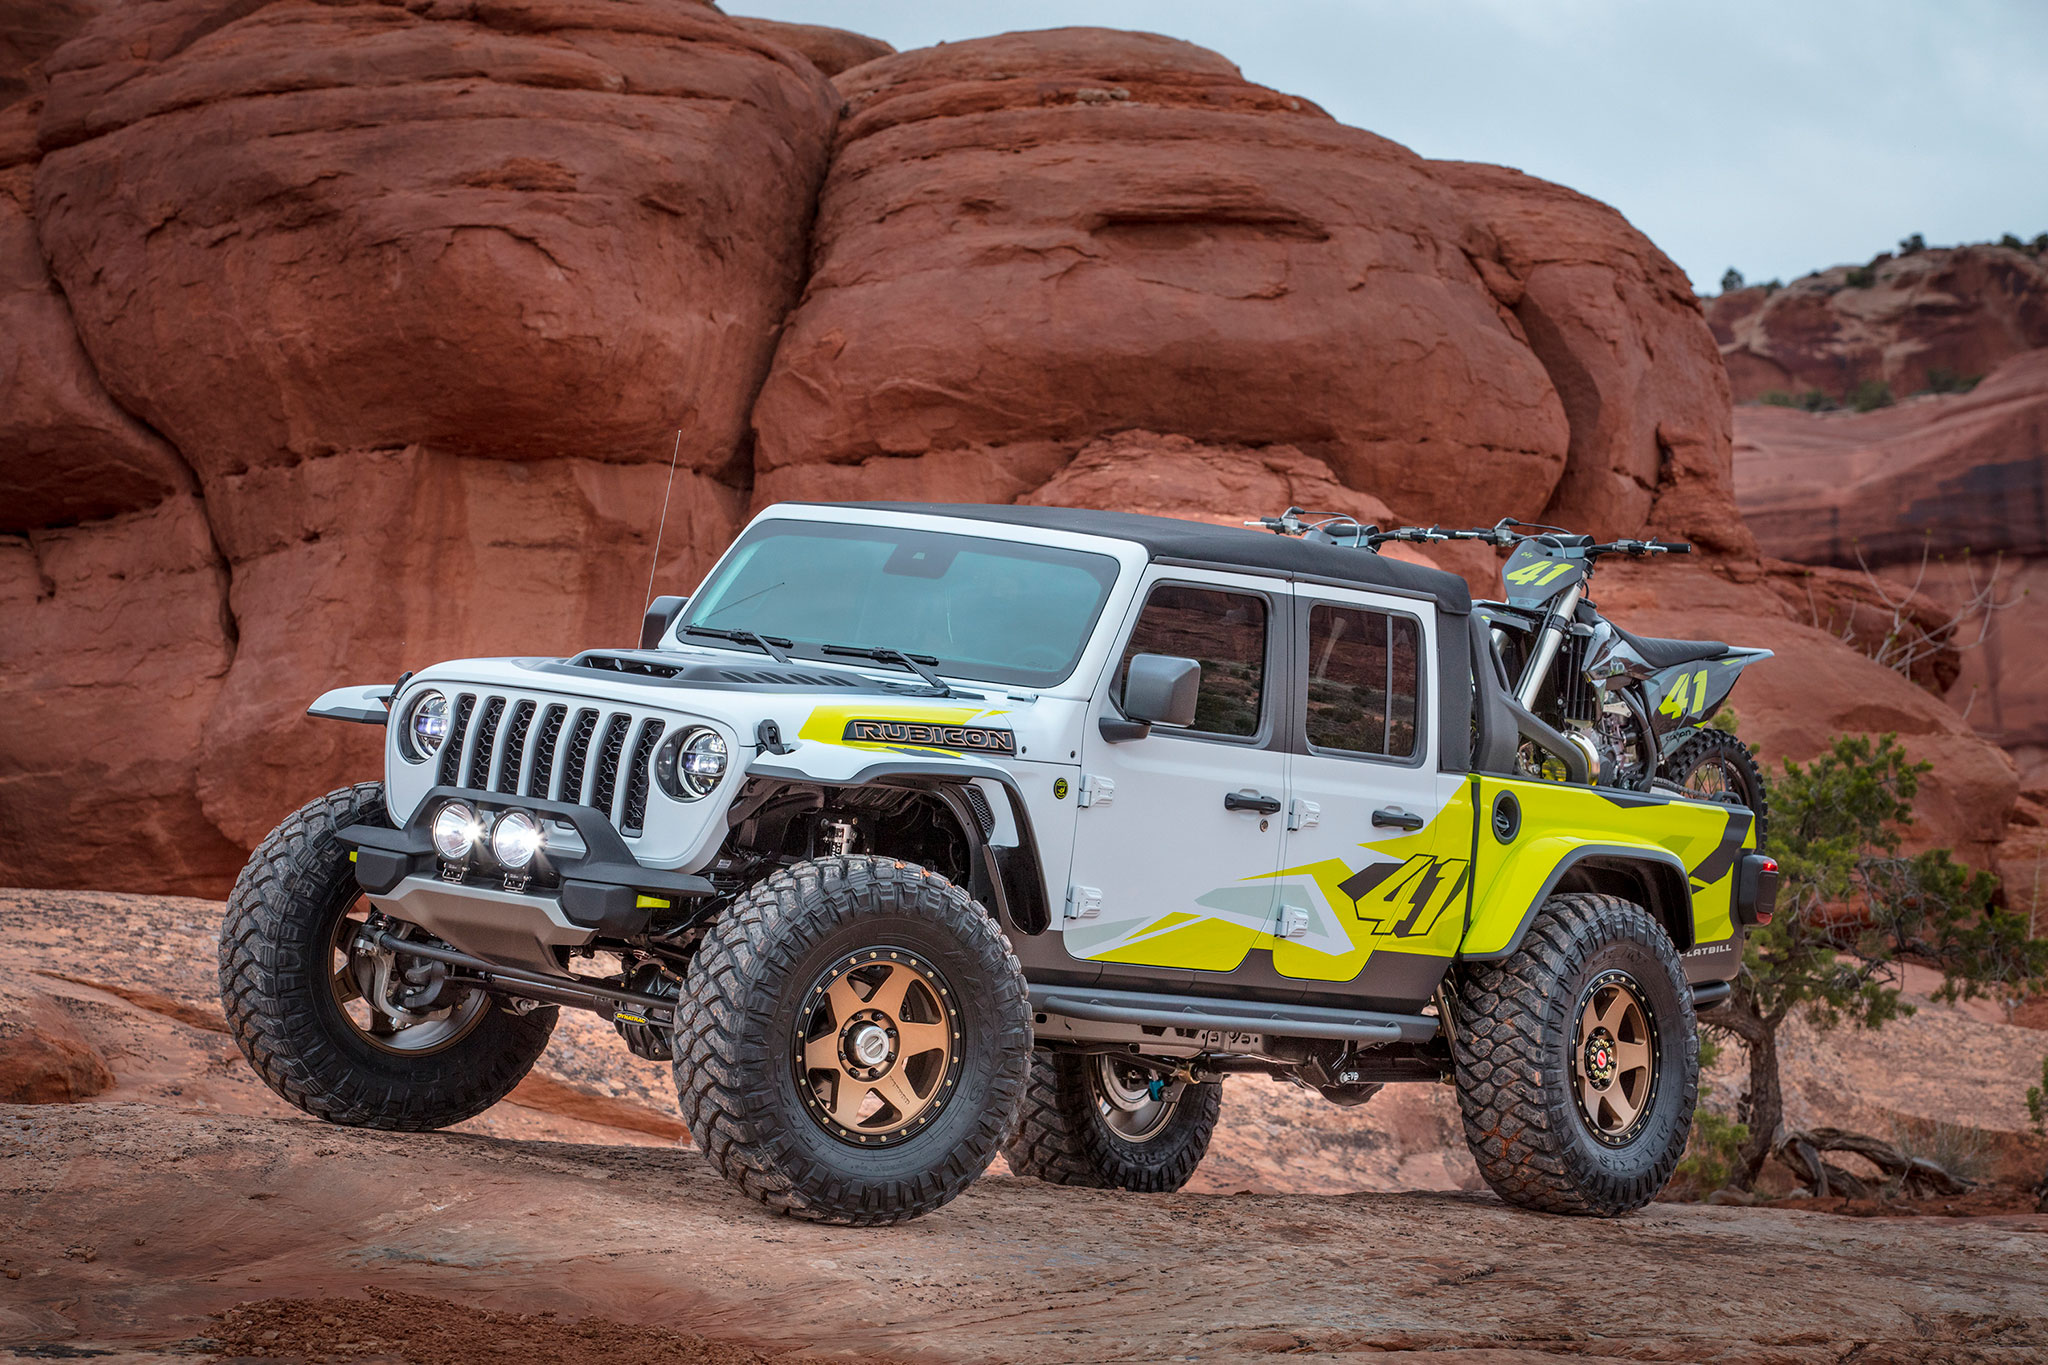 2019 Jeep Gladiator Flabill pour les passionnés de motocross - Moab Easter Jeep Safari.